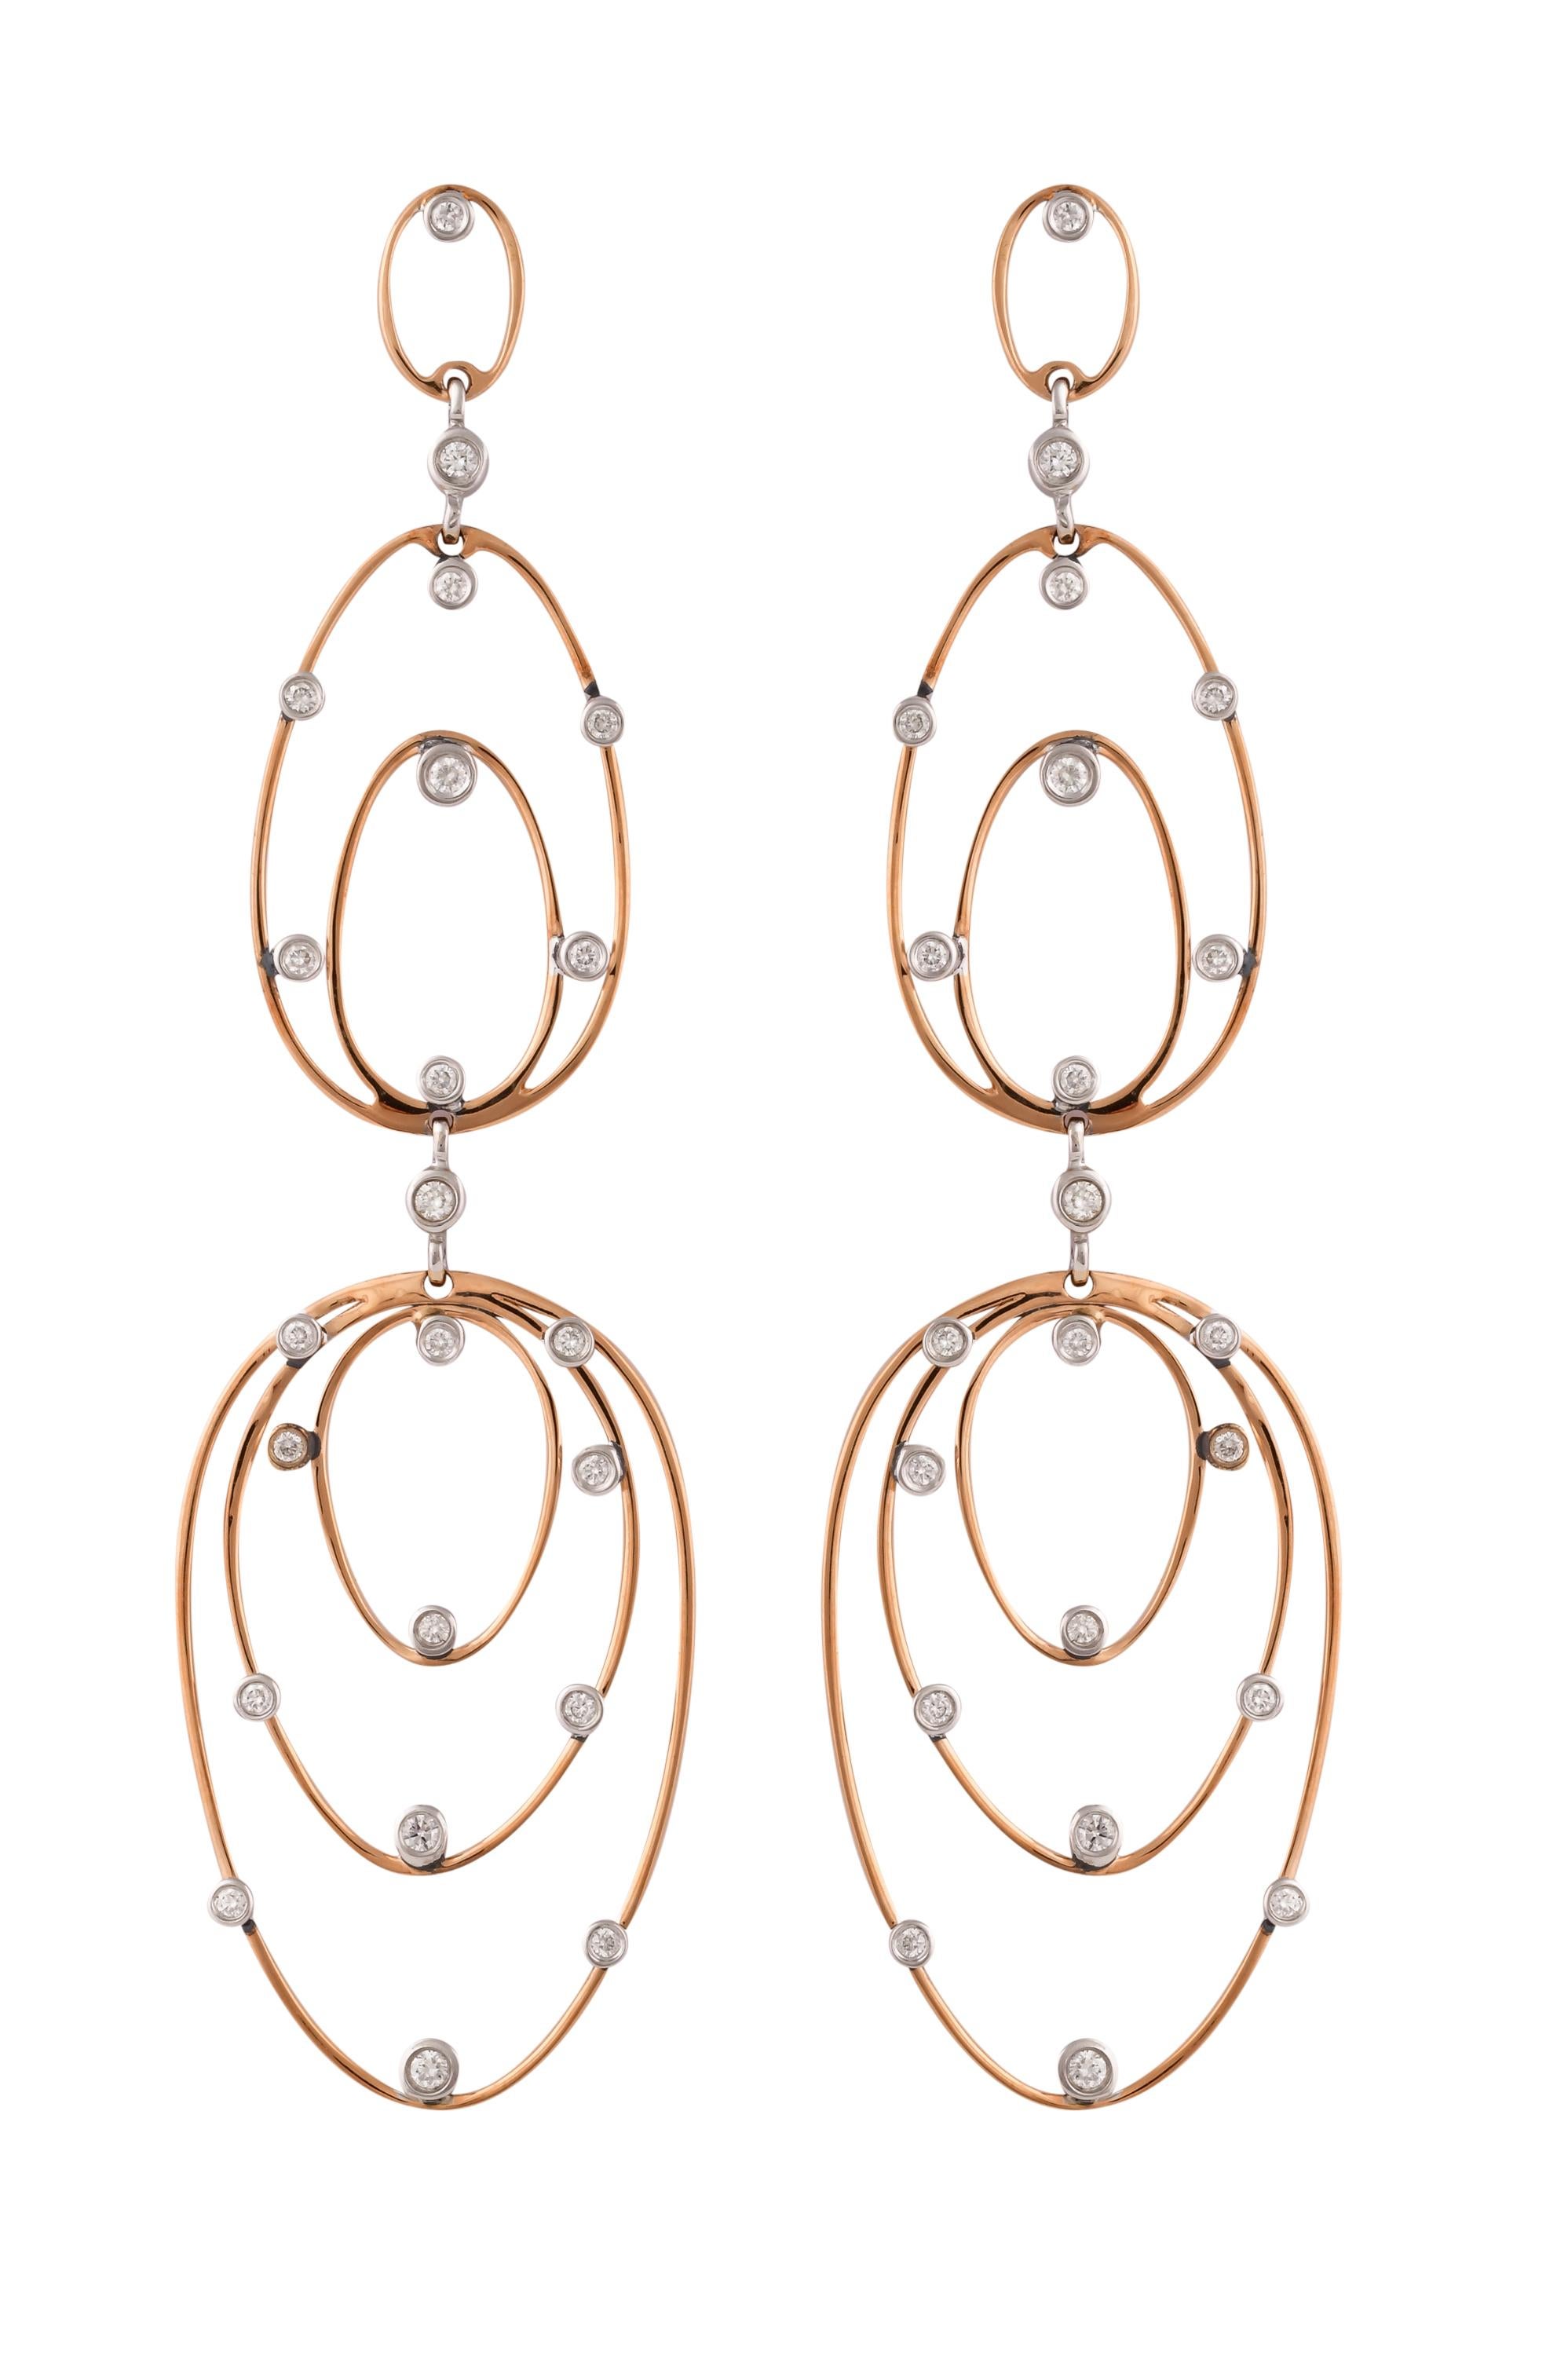 Une collection exclusive de boucles d'oreilles design et uniques de Sunita Nahata Fine Design. 

Boucle d'oreille avec diamant en or blanc et rose 18 carats.

Diamant : 0,187 carat, taille 1,70, forme ronde, couleur G, pureté VS.
Diamant : 0,338